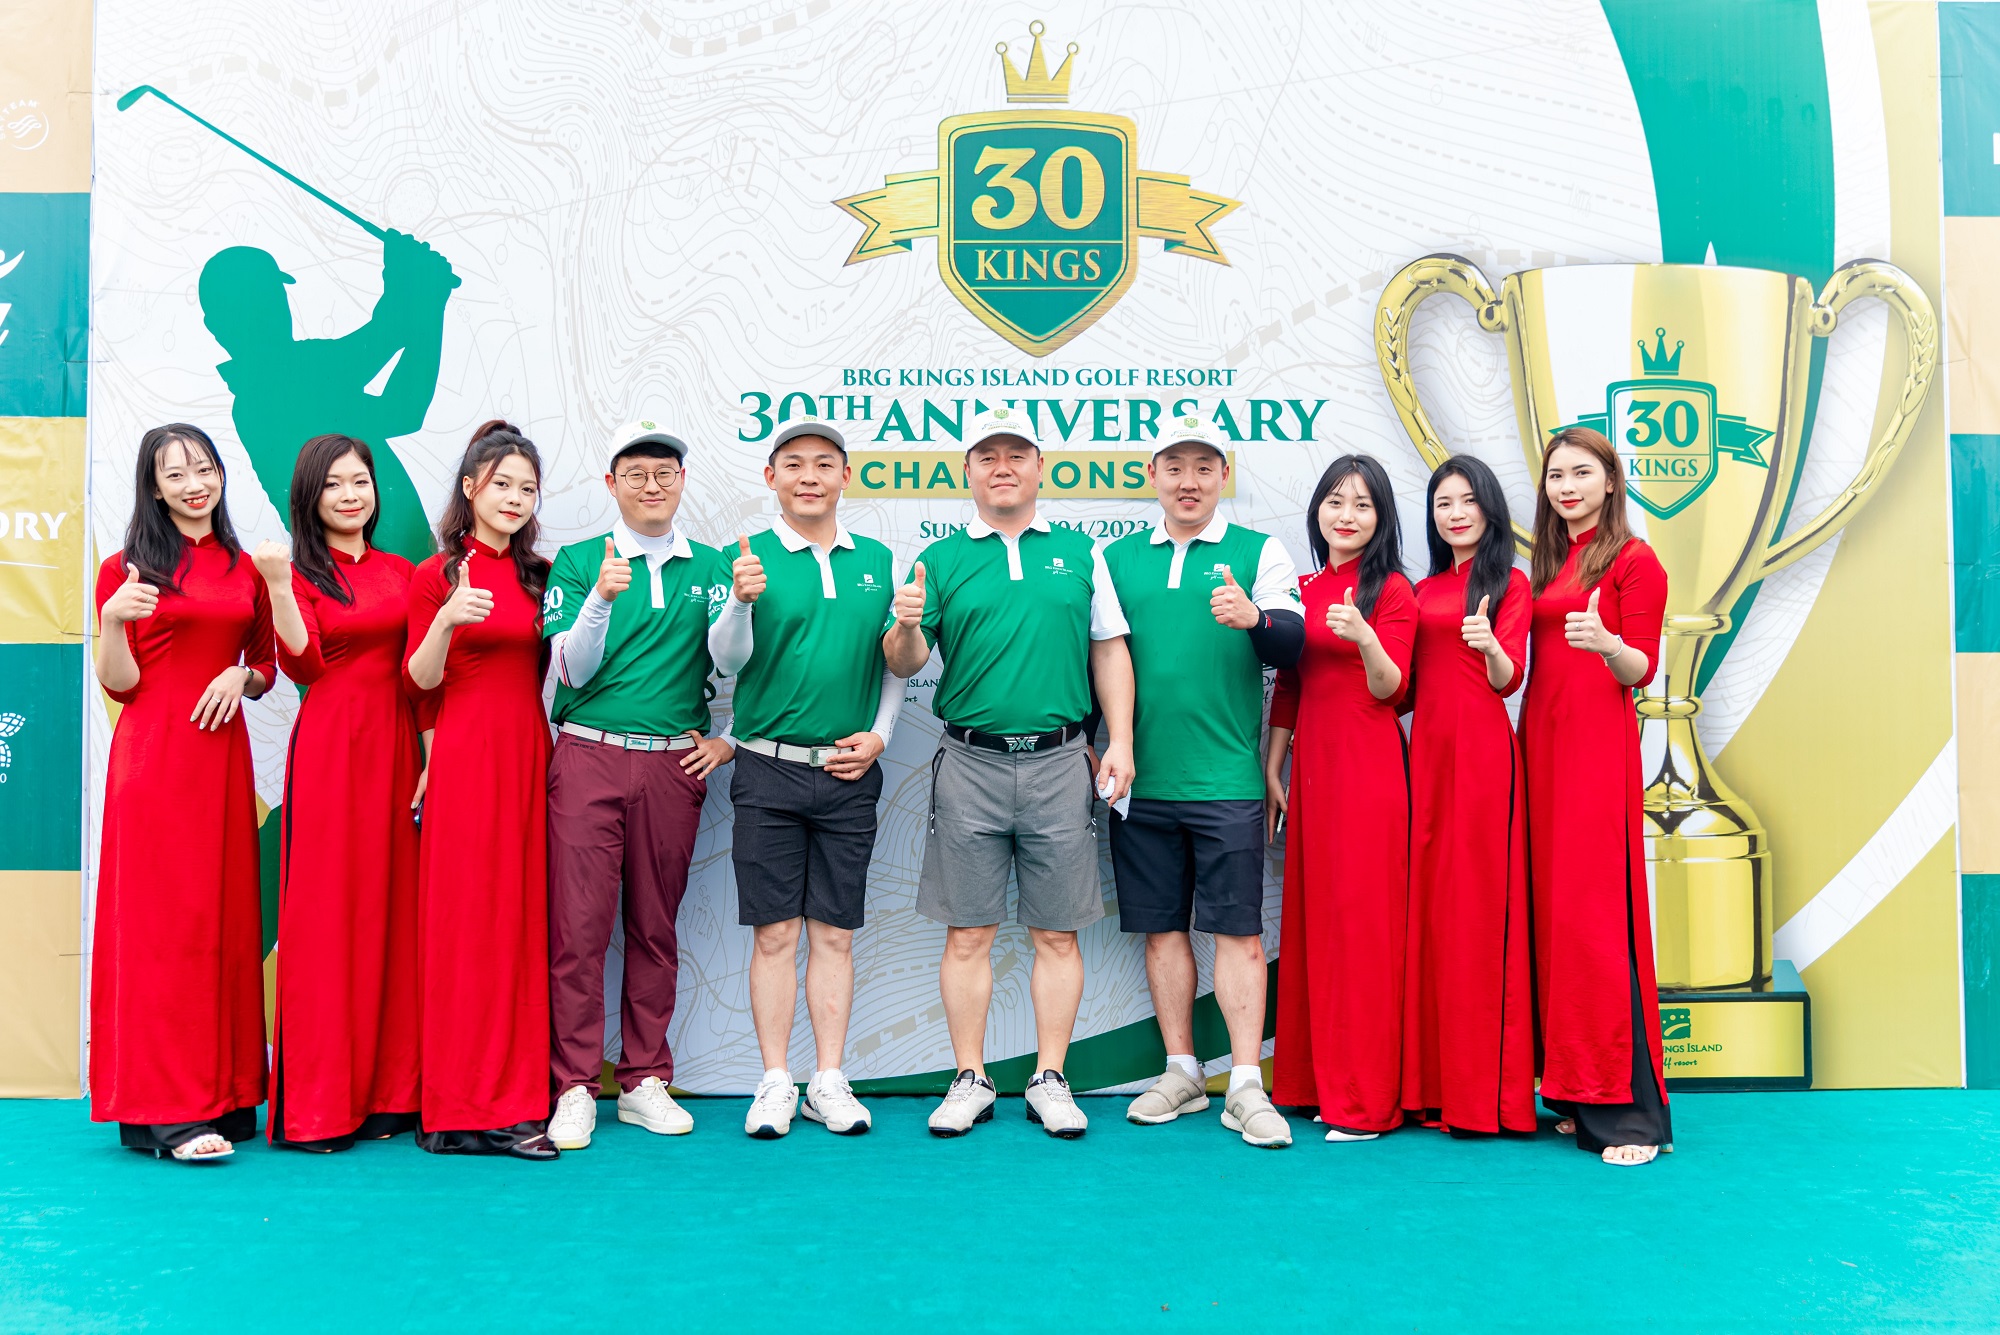 Kinh tế - Tổ hợp sân gôn Kings Island Golf Resort chào đón tuổi 30 với sự kiện “30th Anniversary Championship”